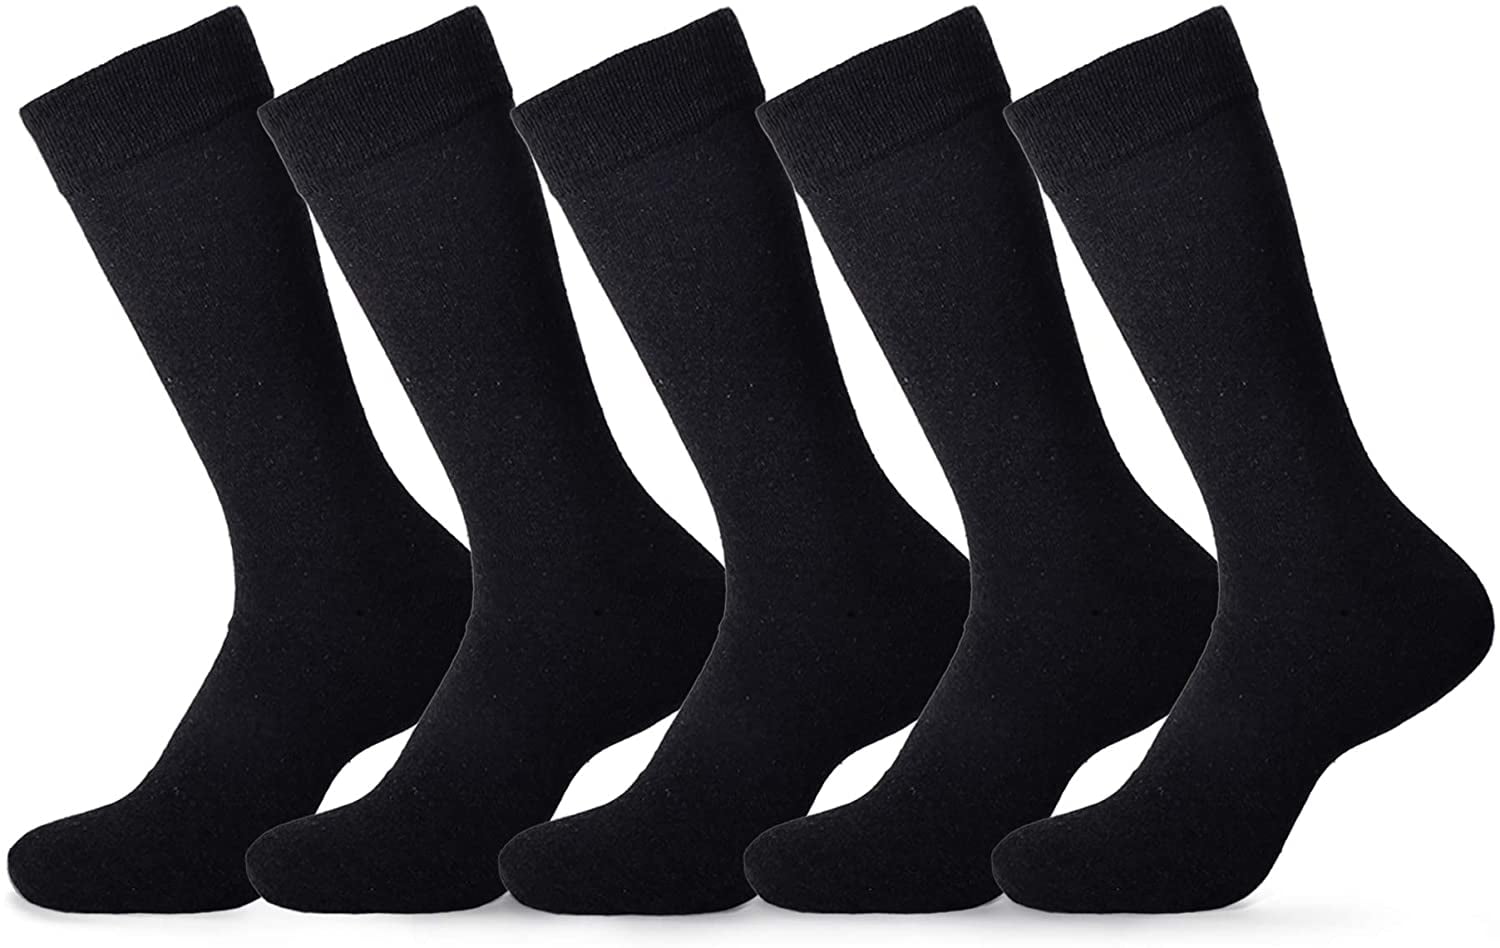 Emprella - Dress Socks for Men- 5 Pack Mens Argyle Black or Solid ...